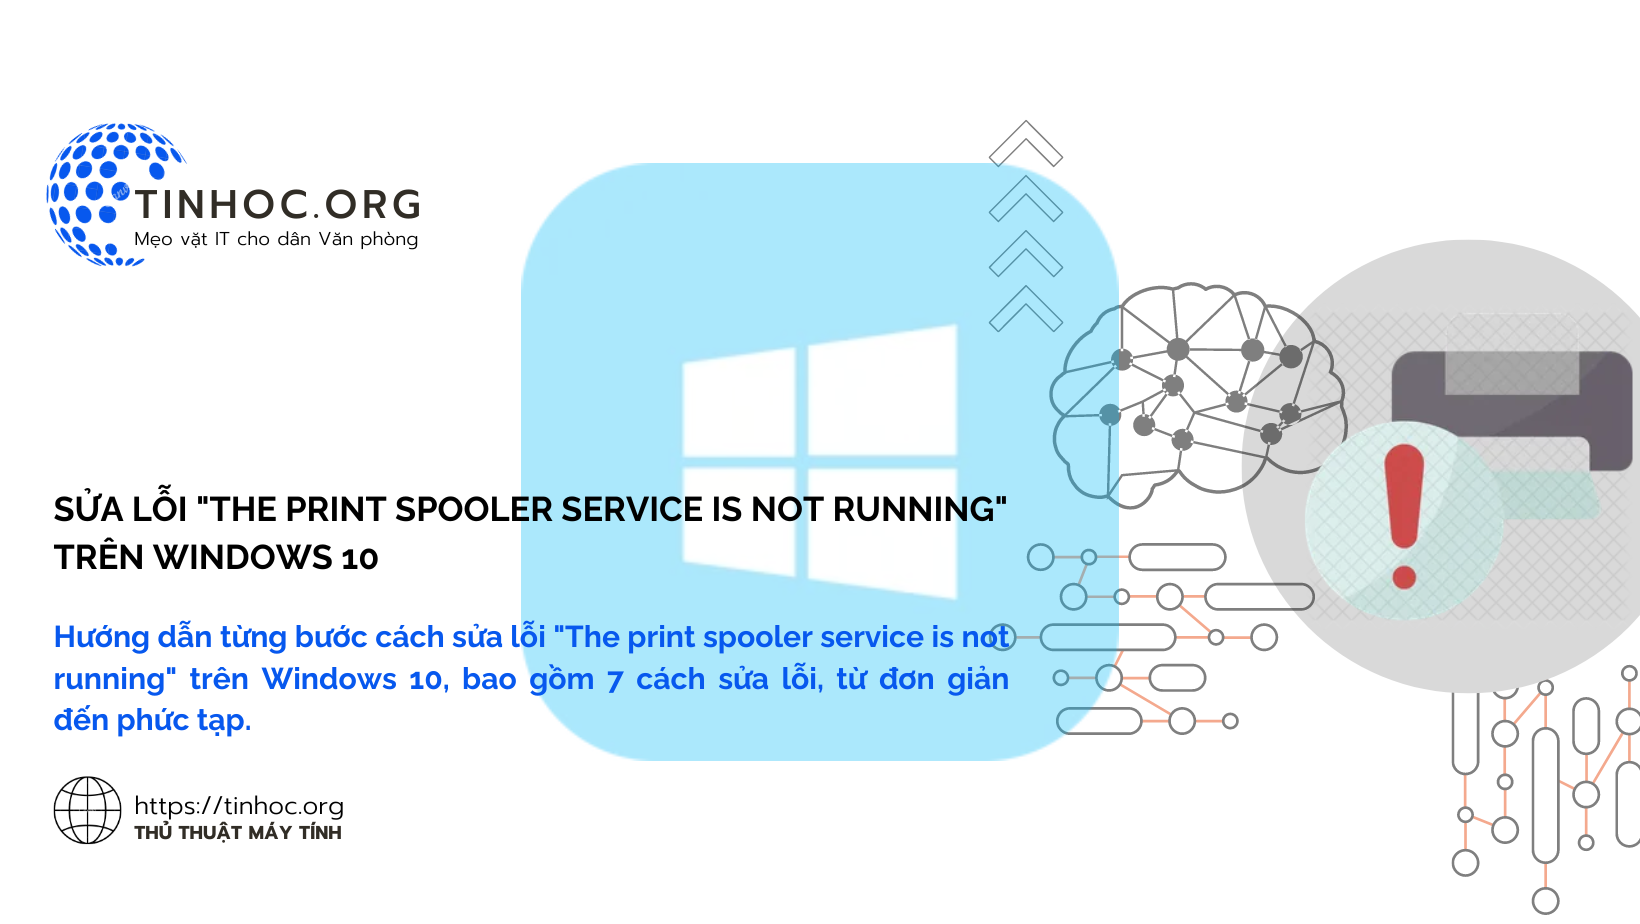 Hướng dẫn từng bước cách sửa lỗi "The print spooler service is not running" trên Windows 10, bao gồm 7 cách sửa lỗi, từ đơn giản đến phức tạp.